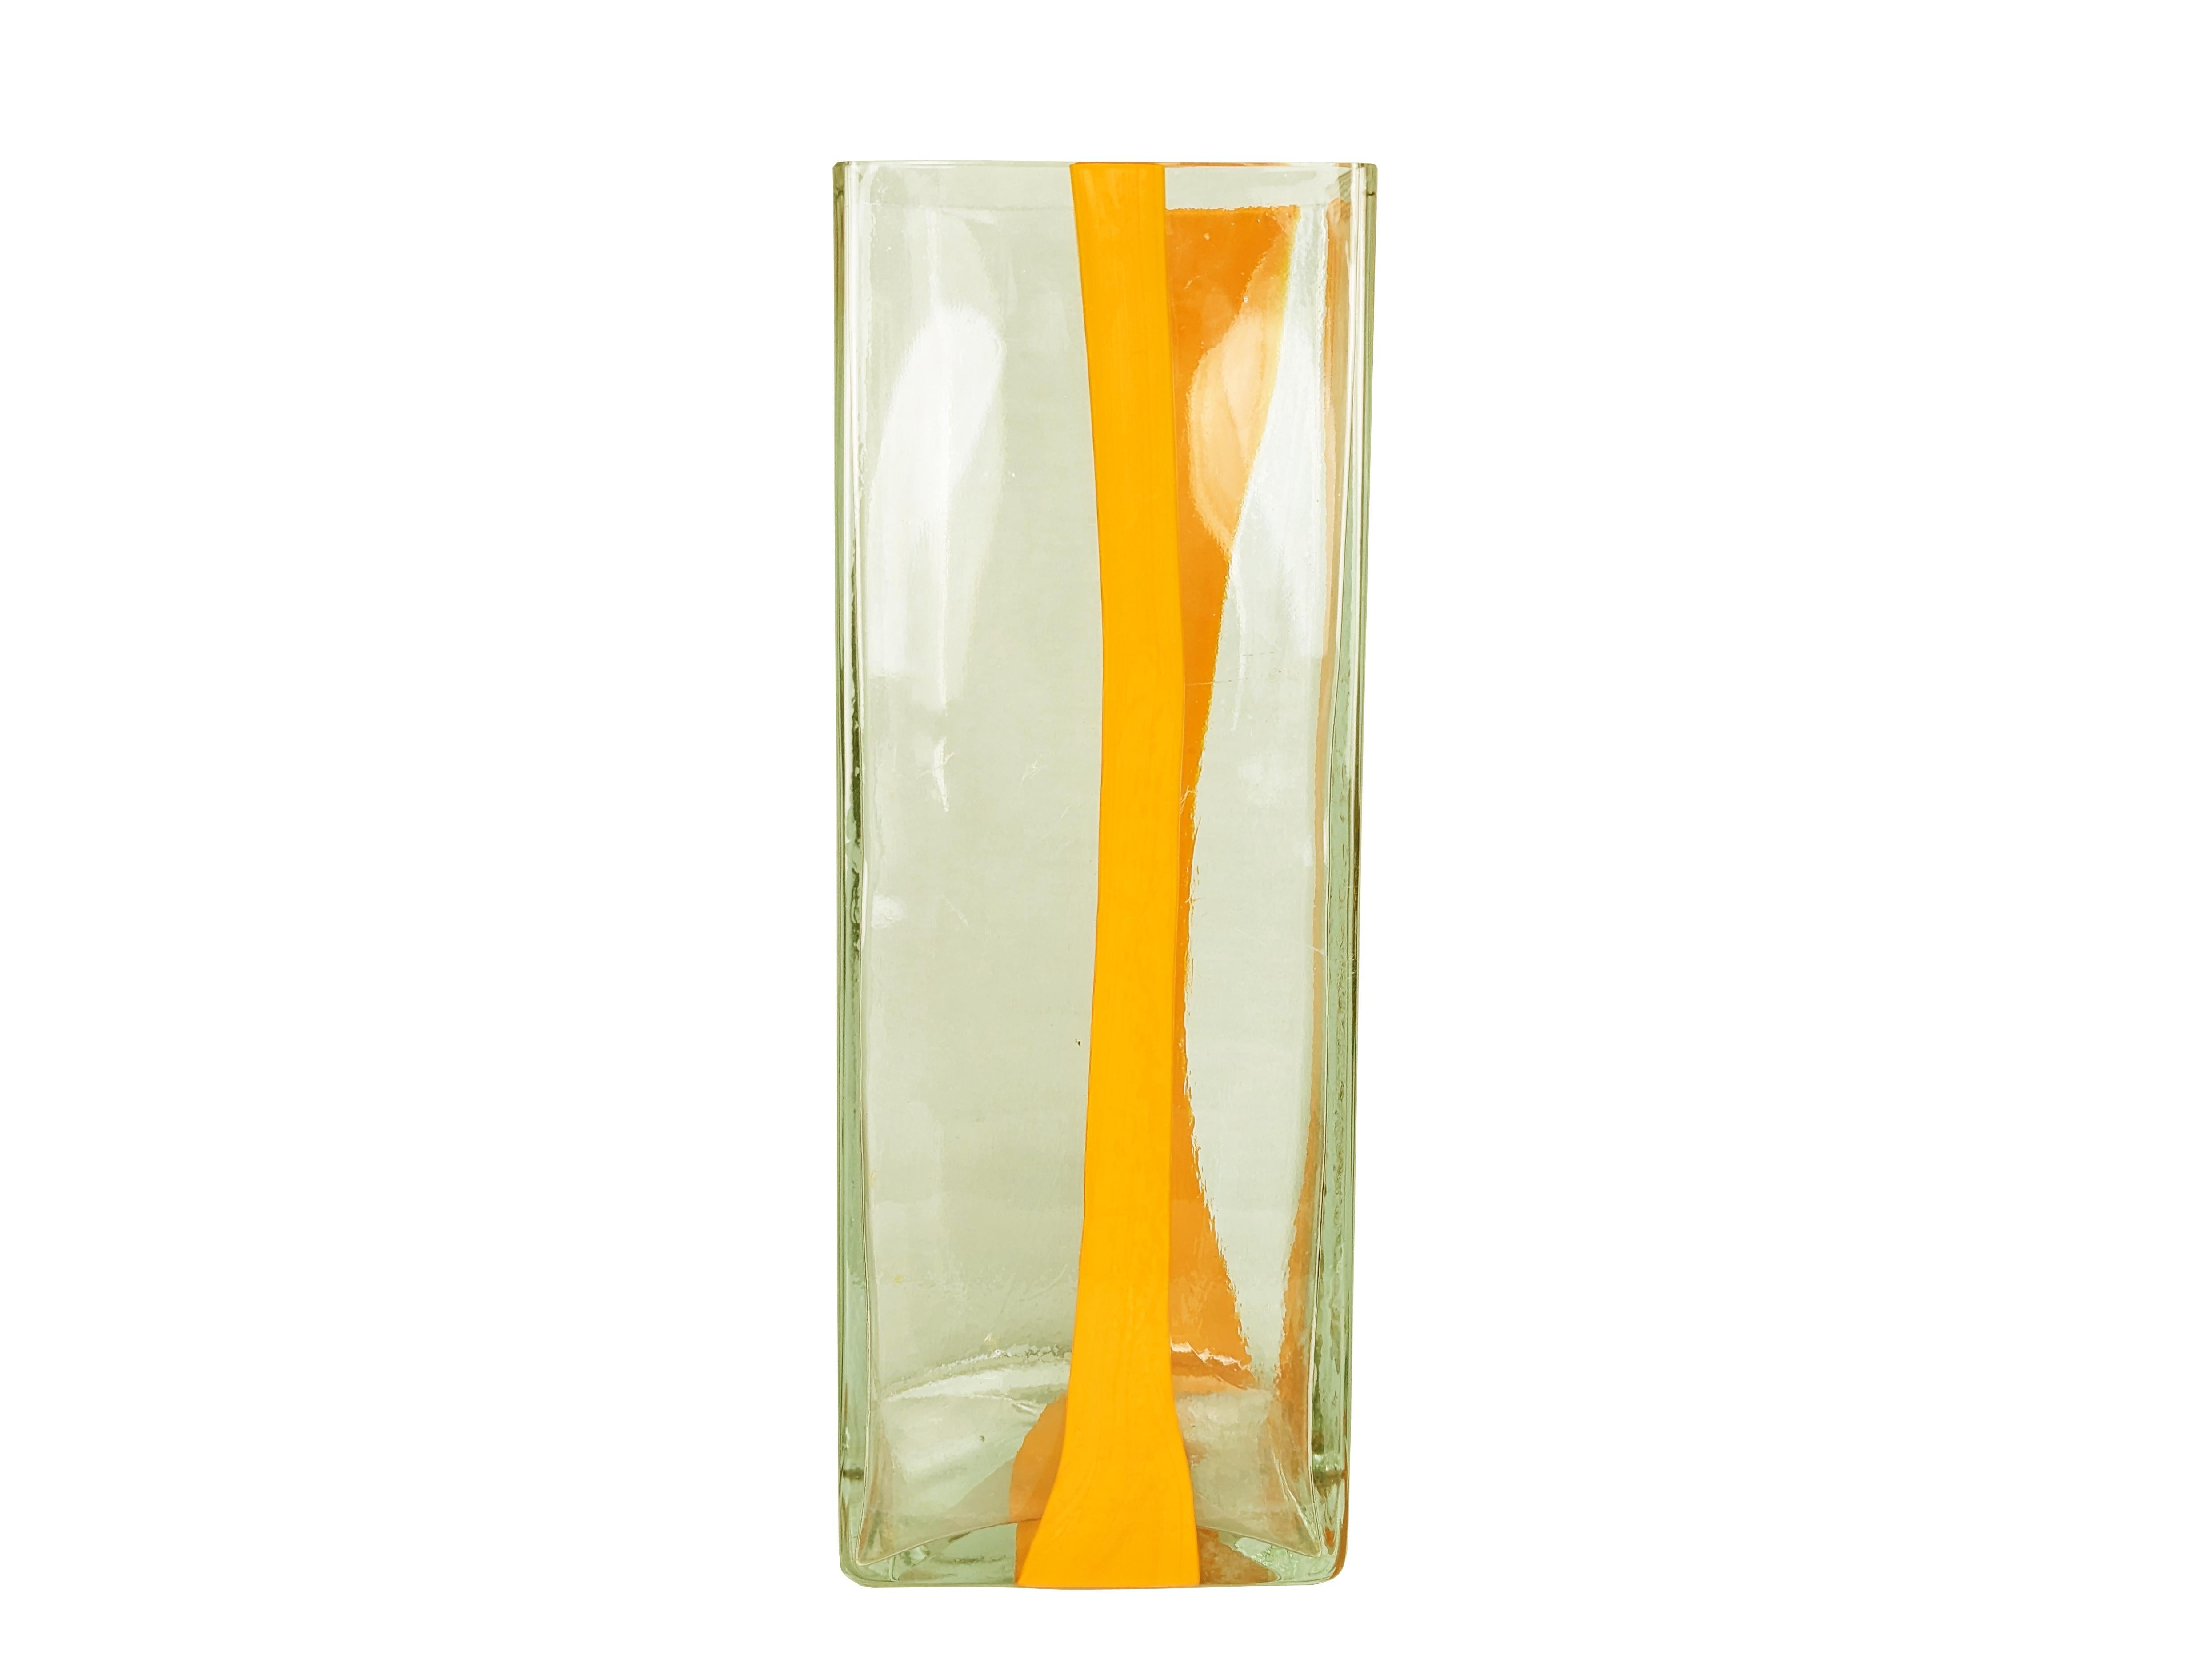 Grand vase/porte-parapluie en verre de Murano orange et transparent conçu par Pierre Cardin pour Venini dans les années 1970. Le vase est fabriqué selon la technique du verre moulé. La version de cette taille est assez rare. Il n'y a pas de